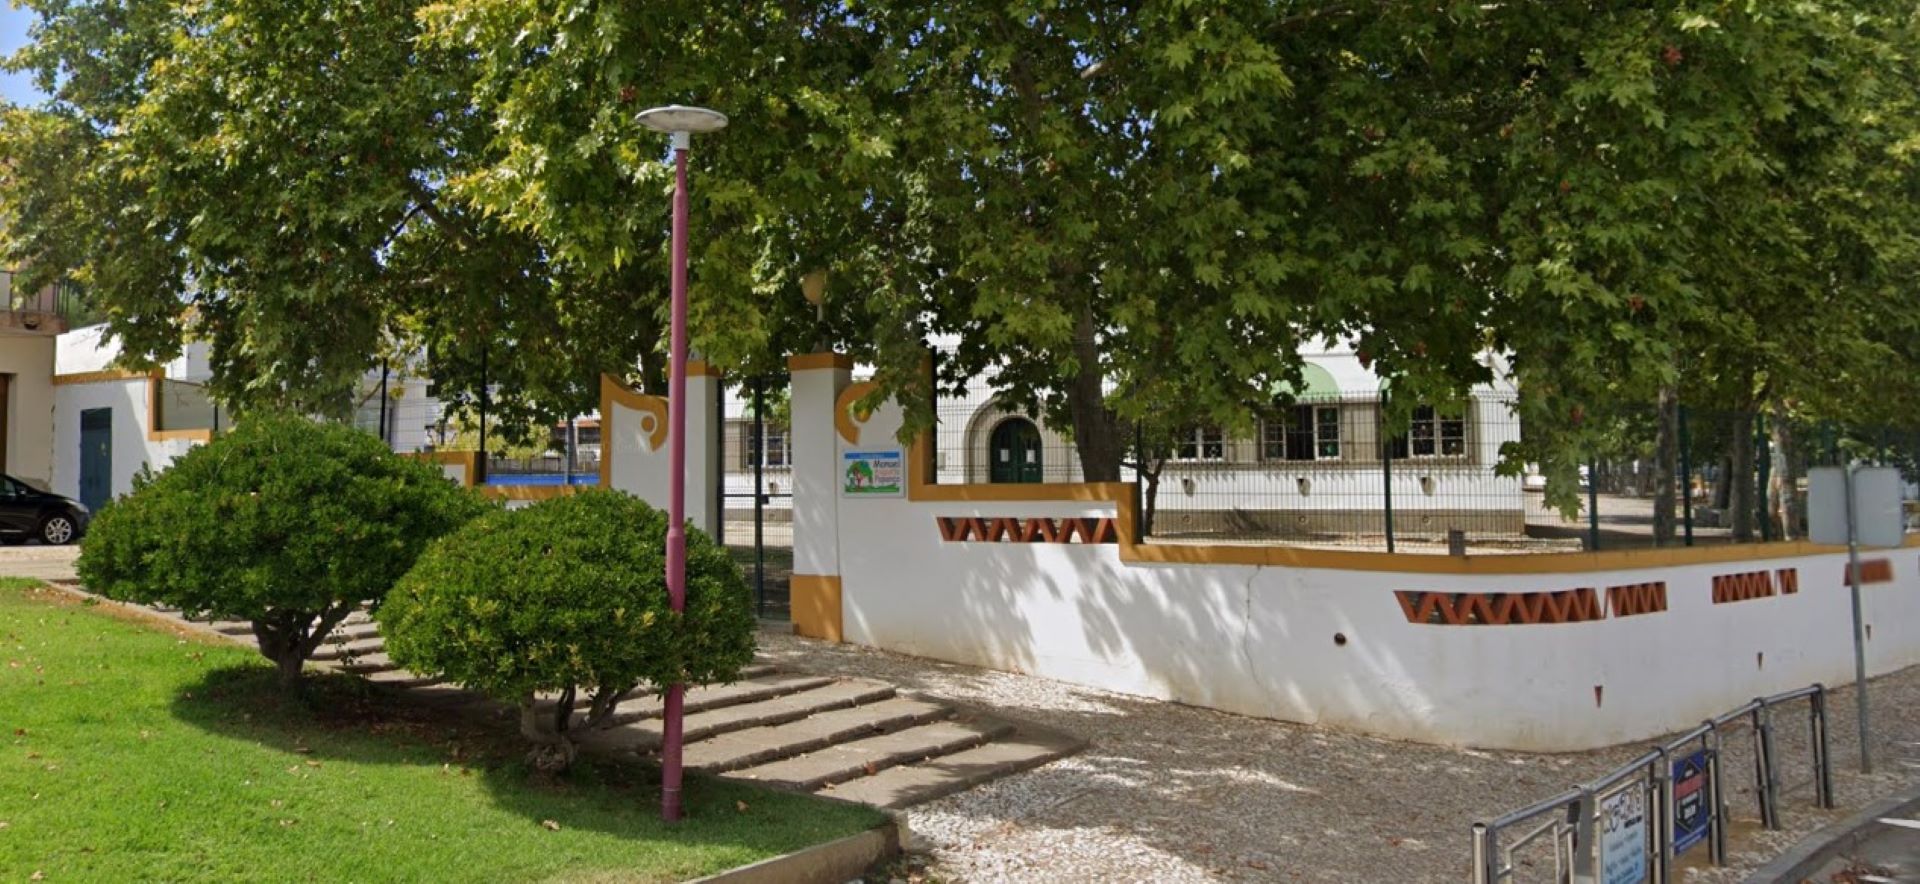 Escola Básica Manuel Augusto Papança (EBMAP)